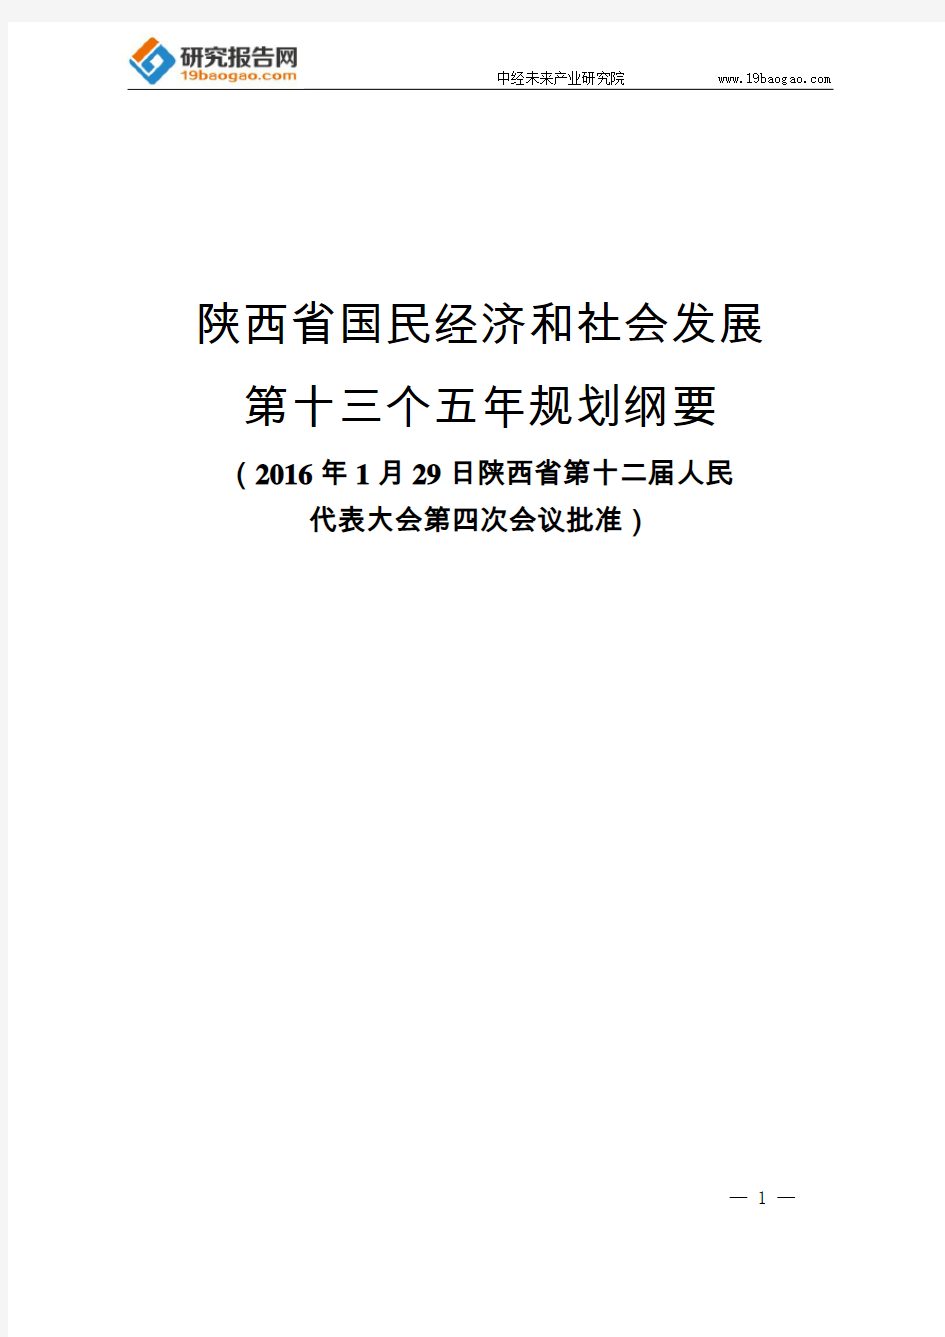 陕西省国民经济和社会发展第十三个五年规划纲要(最全版)